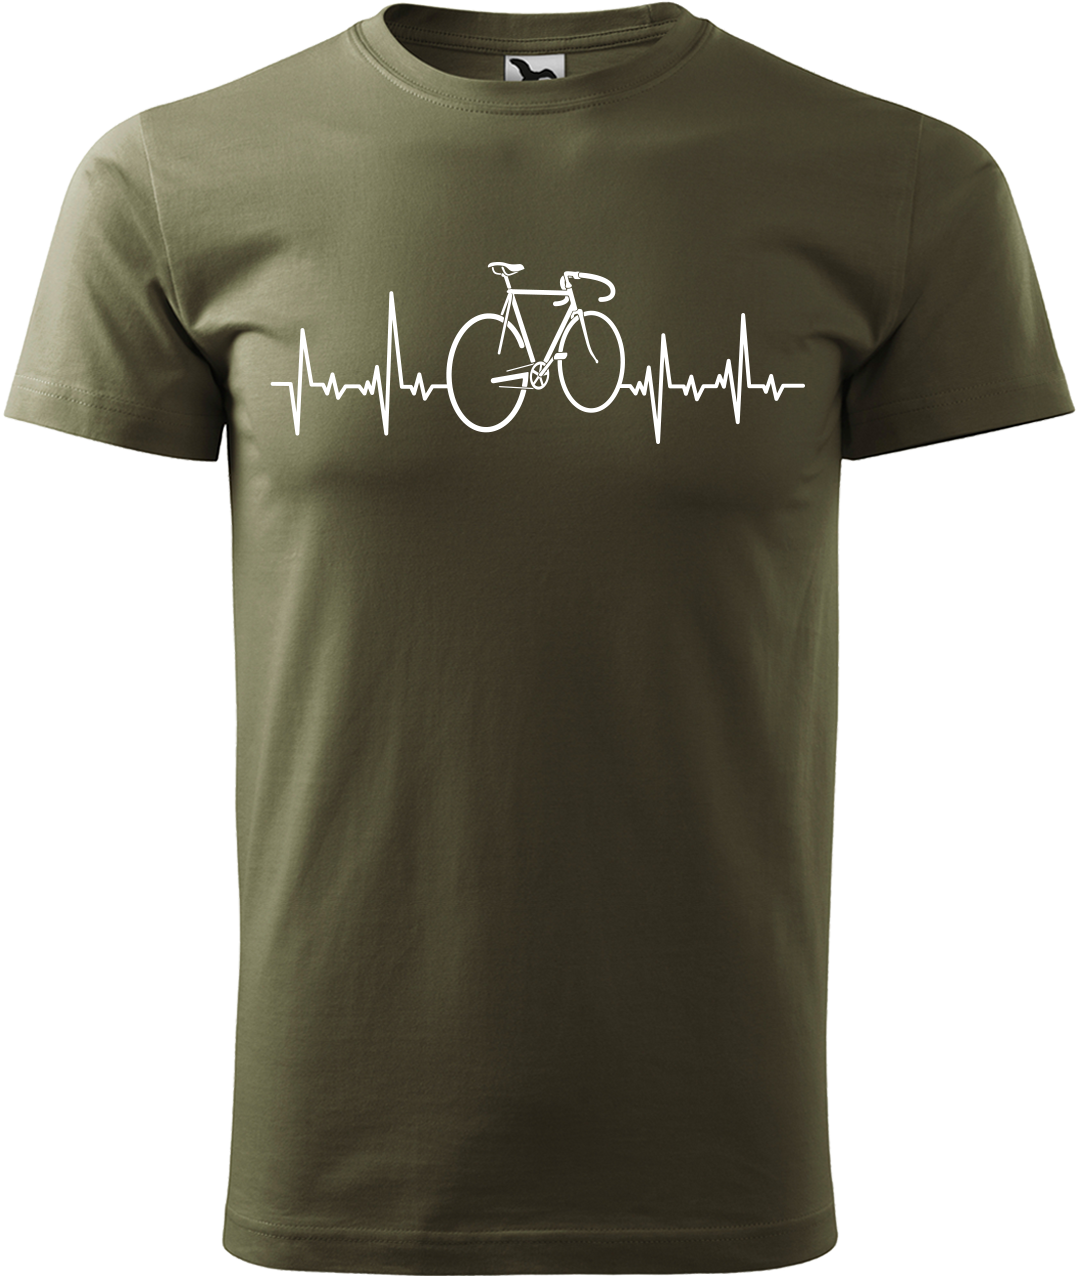 Pánské tričko s kolem - Cyklistův kardiogram Velikost: 2XL, Barva: Military (69)